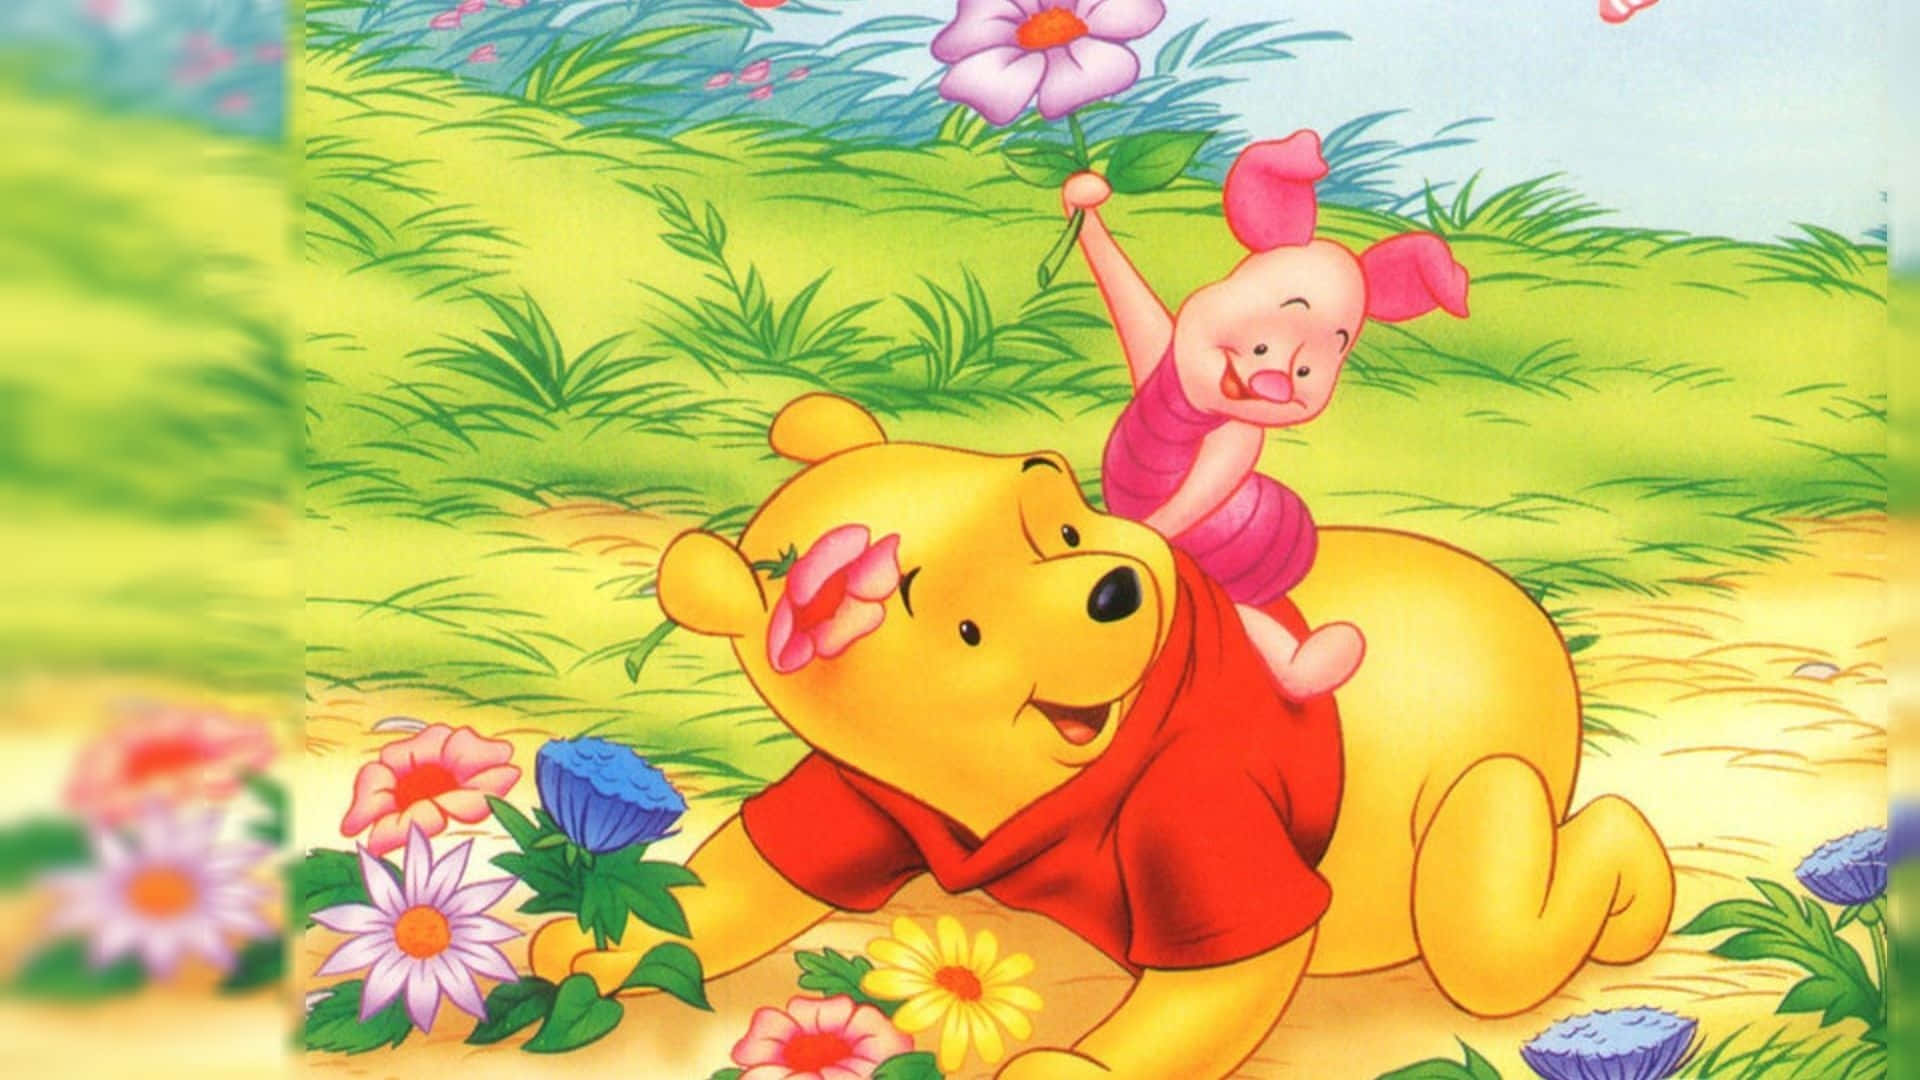 Capturala Alegría De La Infancia Con Winnie The Pooh Fondo de pantalla